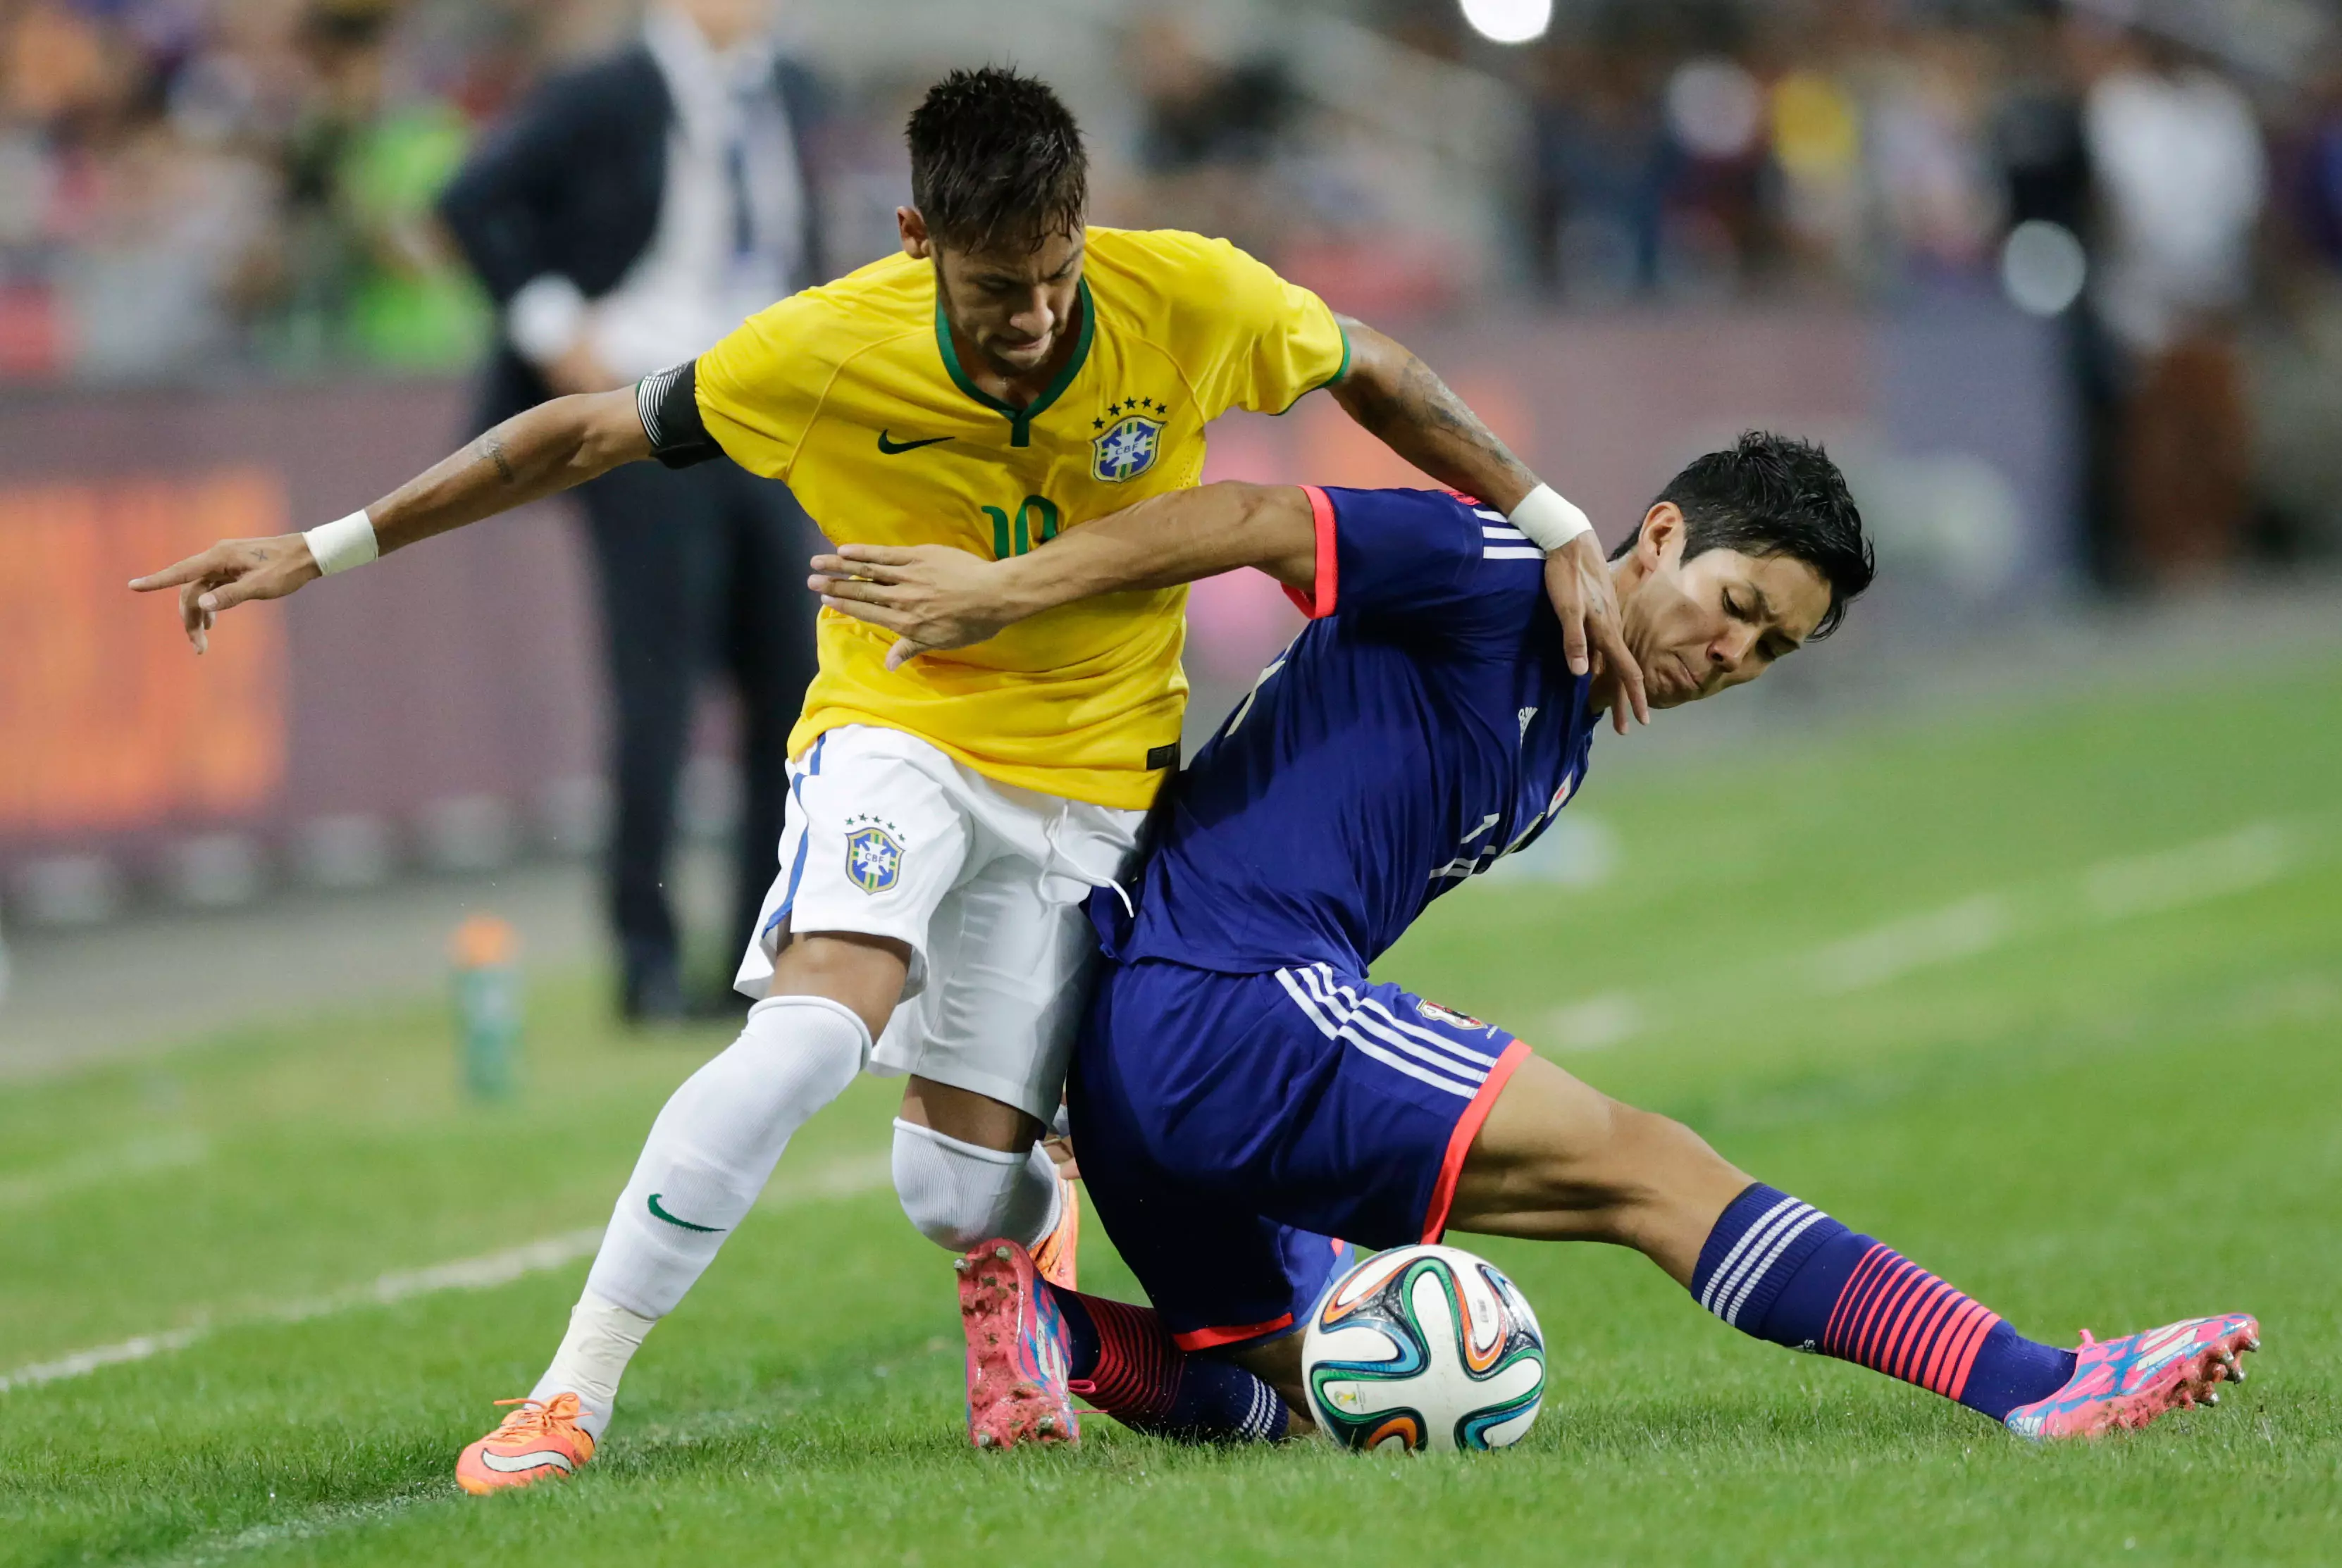 שחקן נבחרת יפן, יושינורי מוטו, נאבק בשחקן נבחרת ברזיל, ניימאר